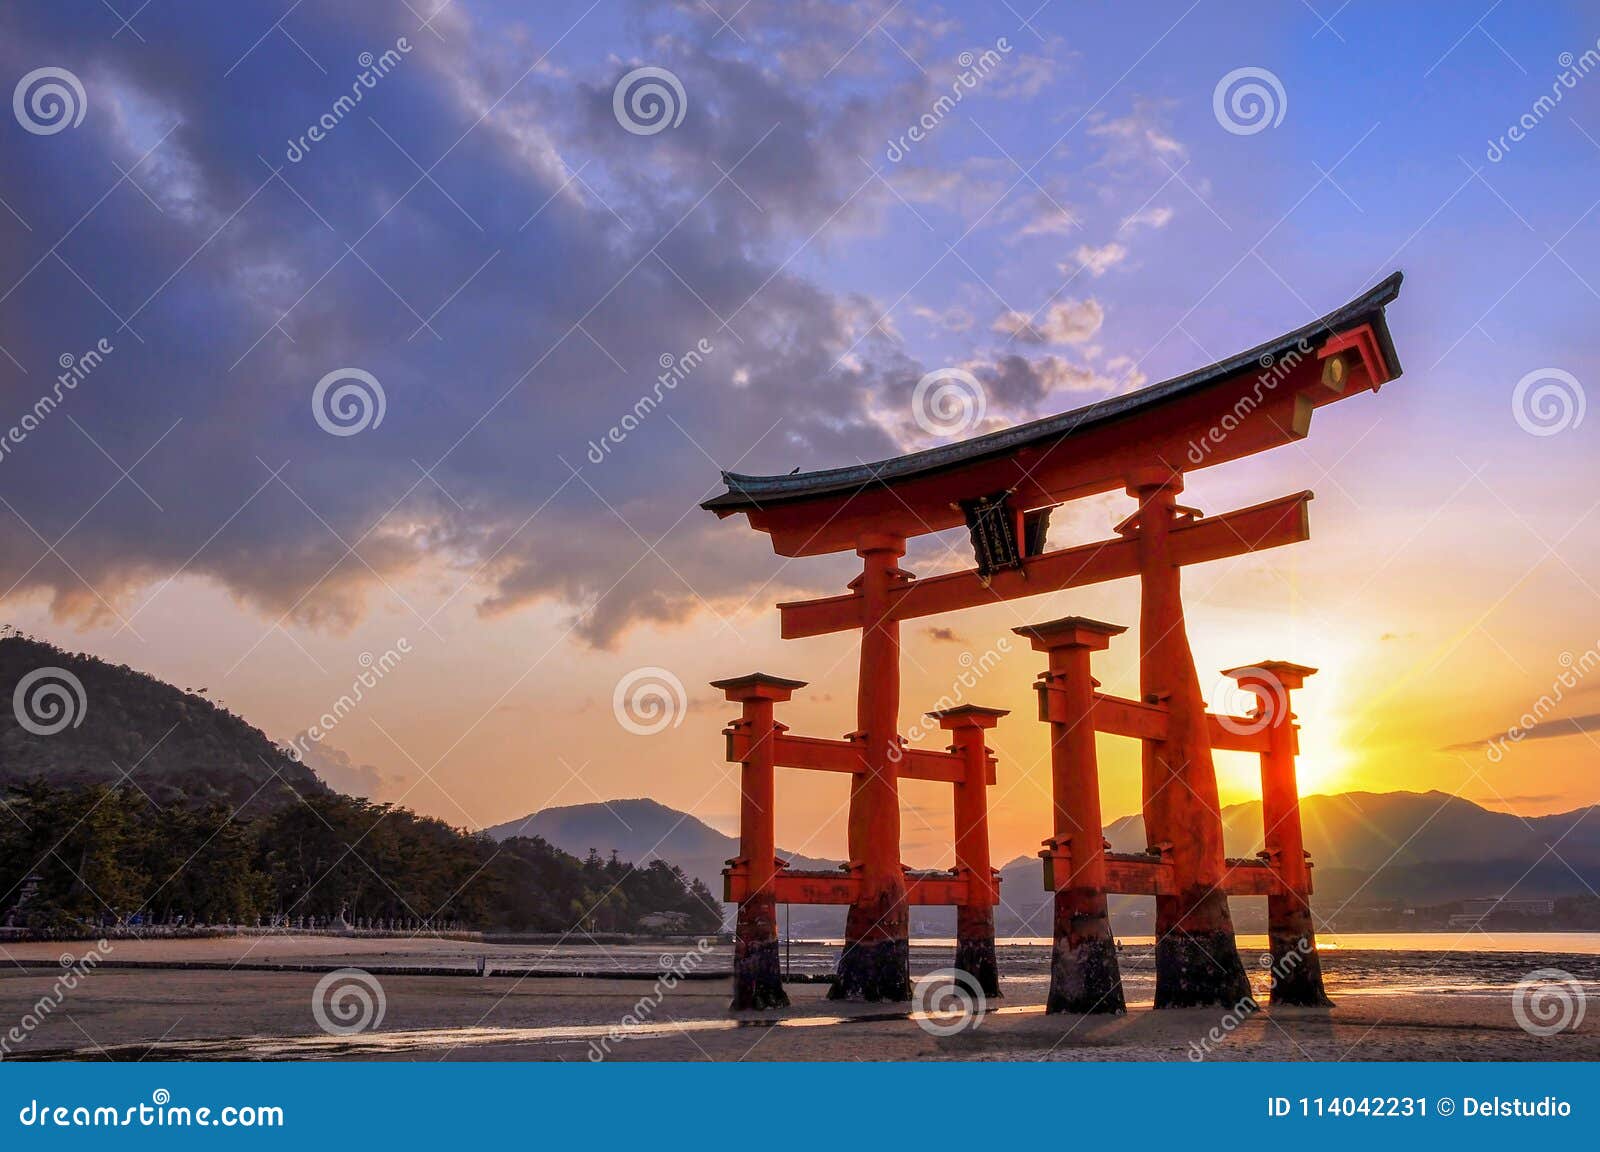 great torii of miyajima at sunset, near hiroshima japan